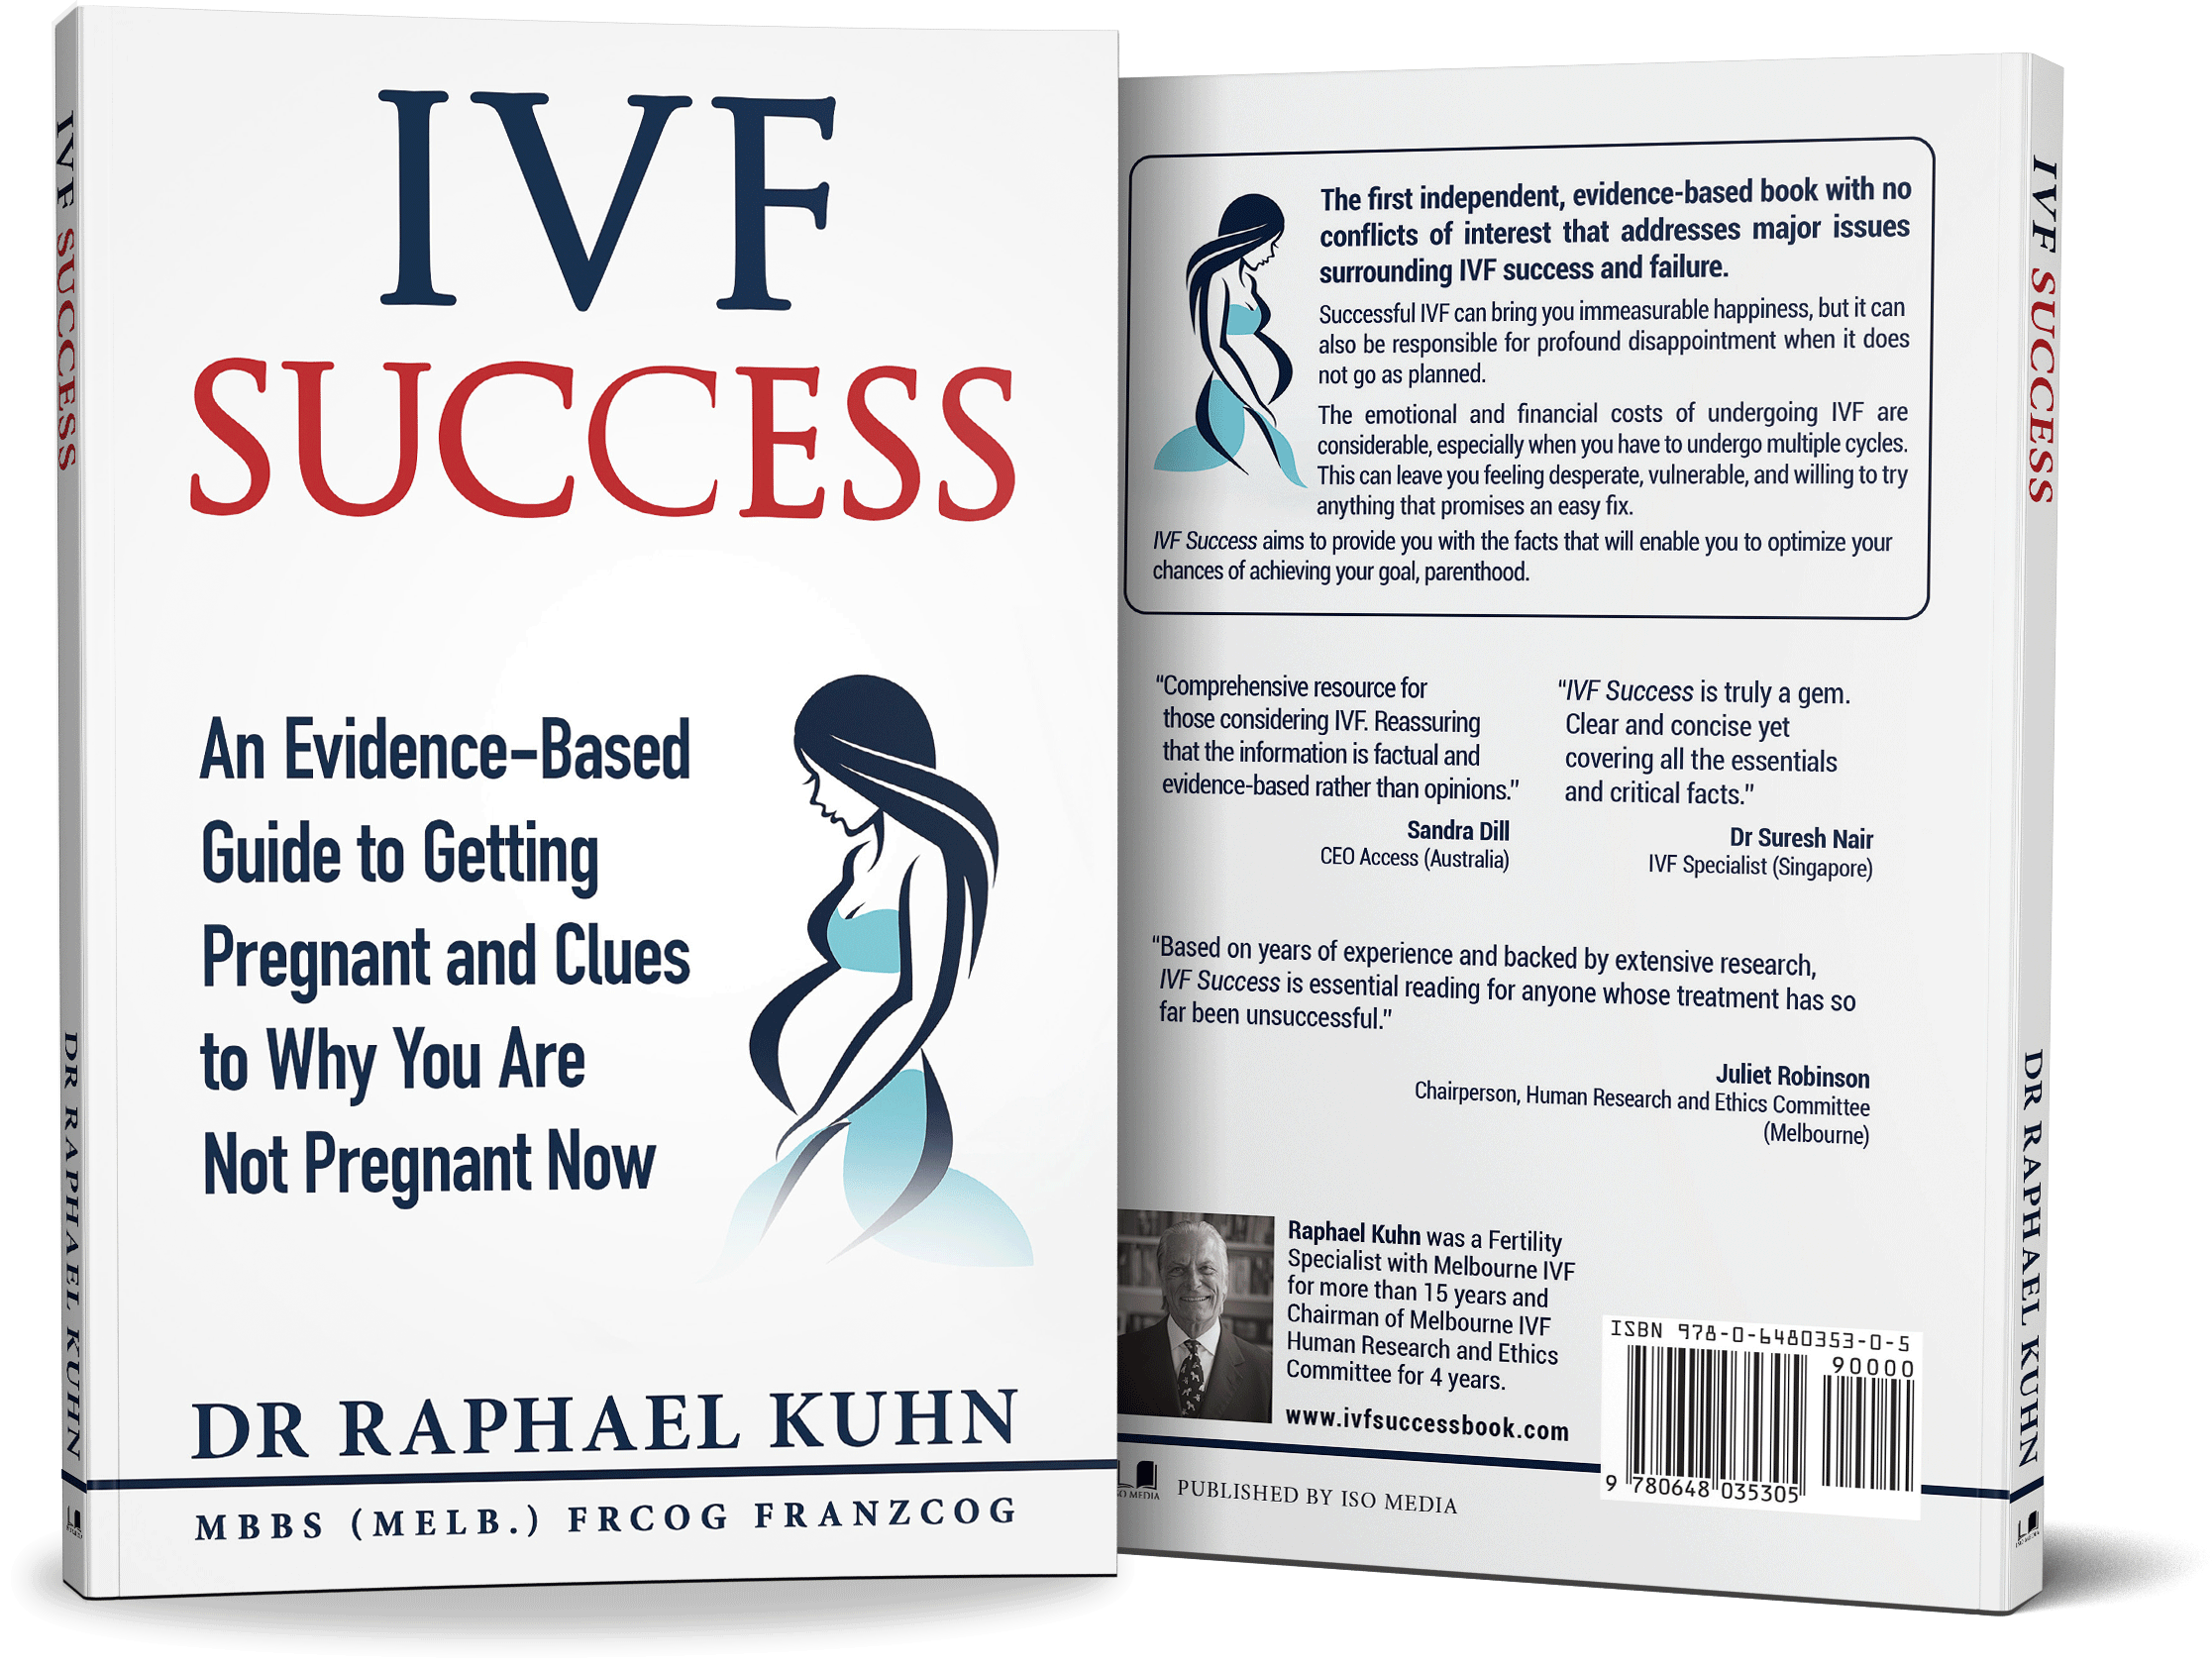 //raphaelkuhn.com/wp-content/uploads/2017/08/IVF-Success-book-mock-up.png